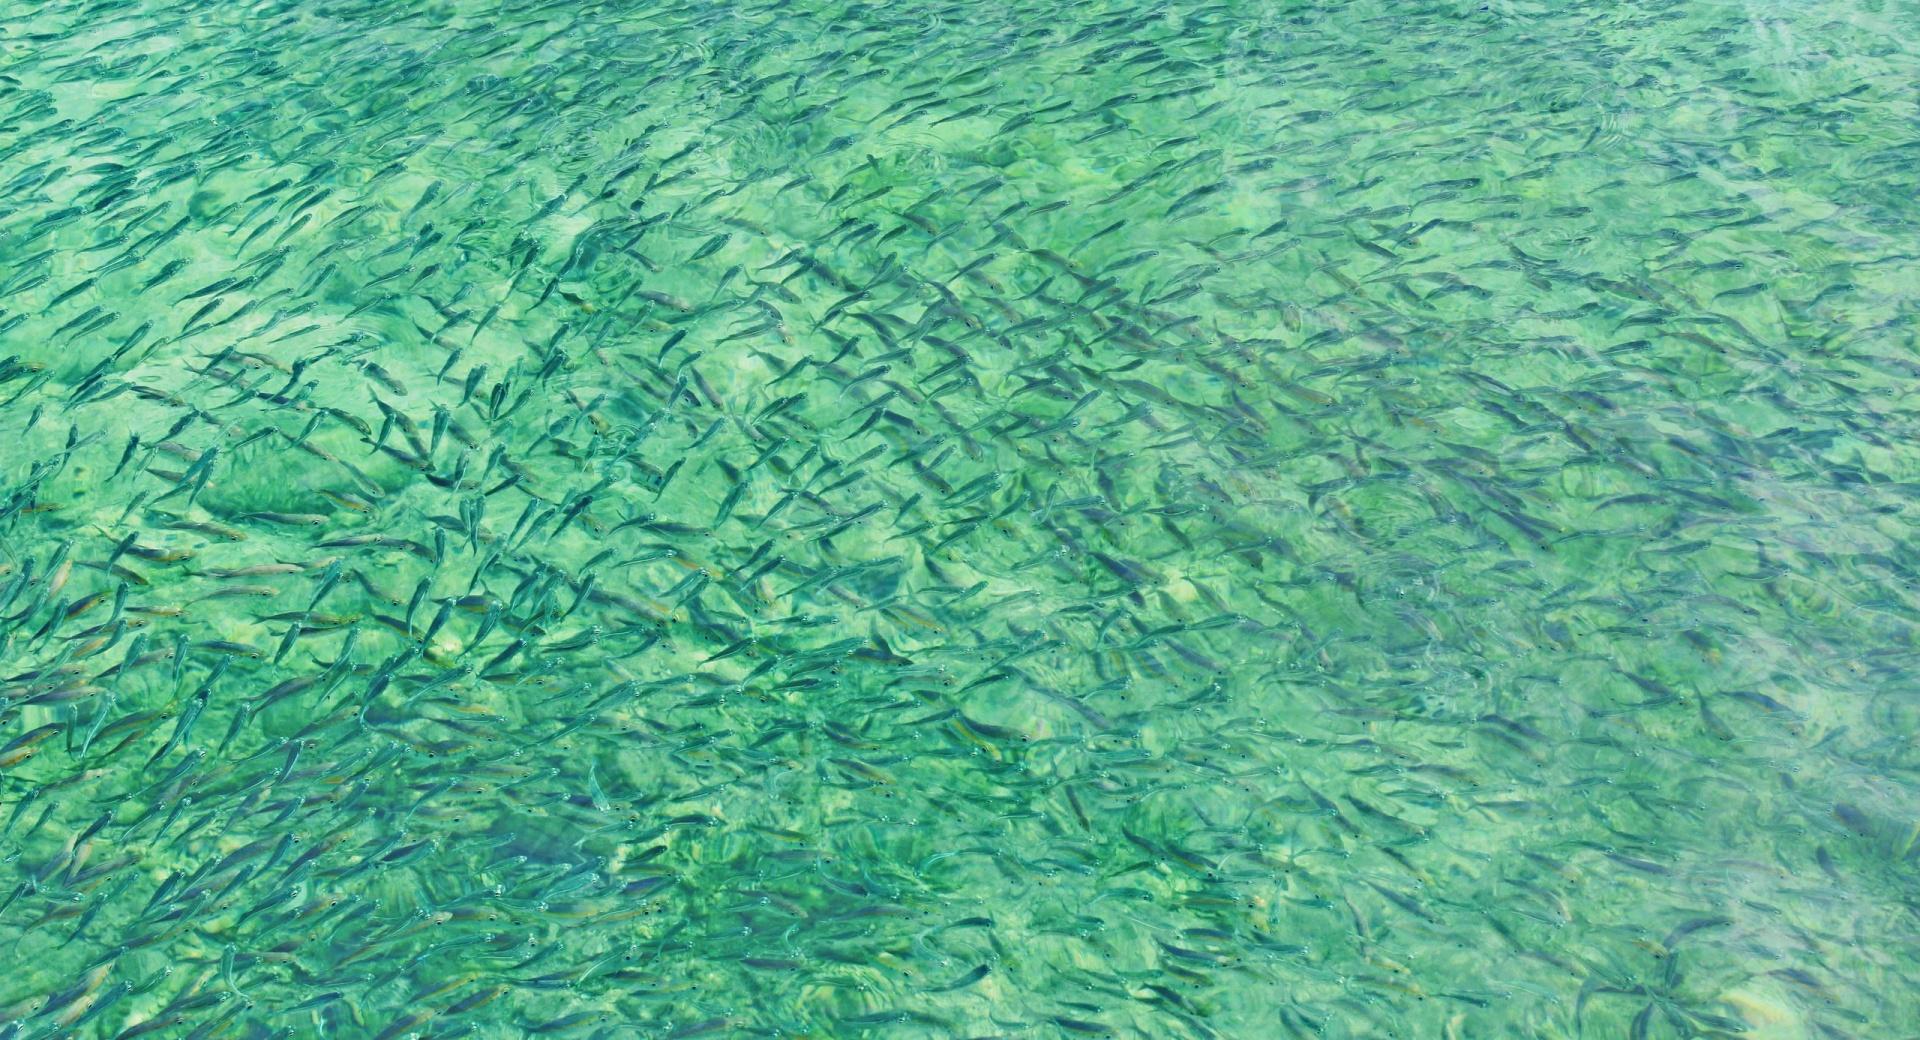 Ikan Ikan Kecil at 1024 x 768 size wallpapers HD quality